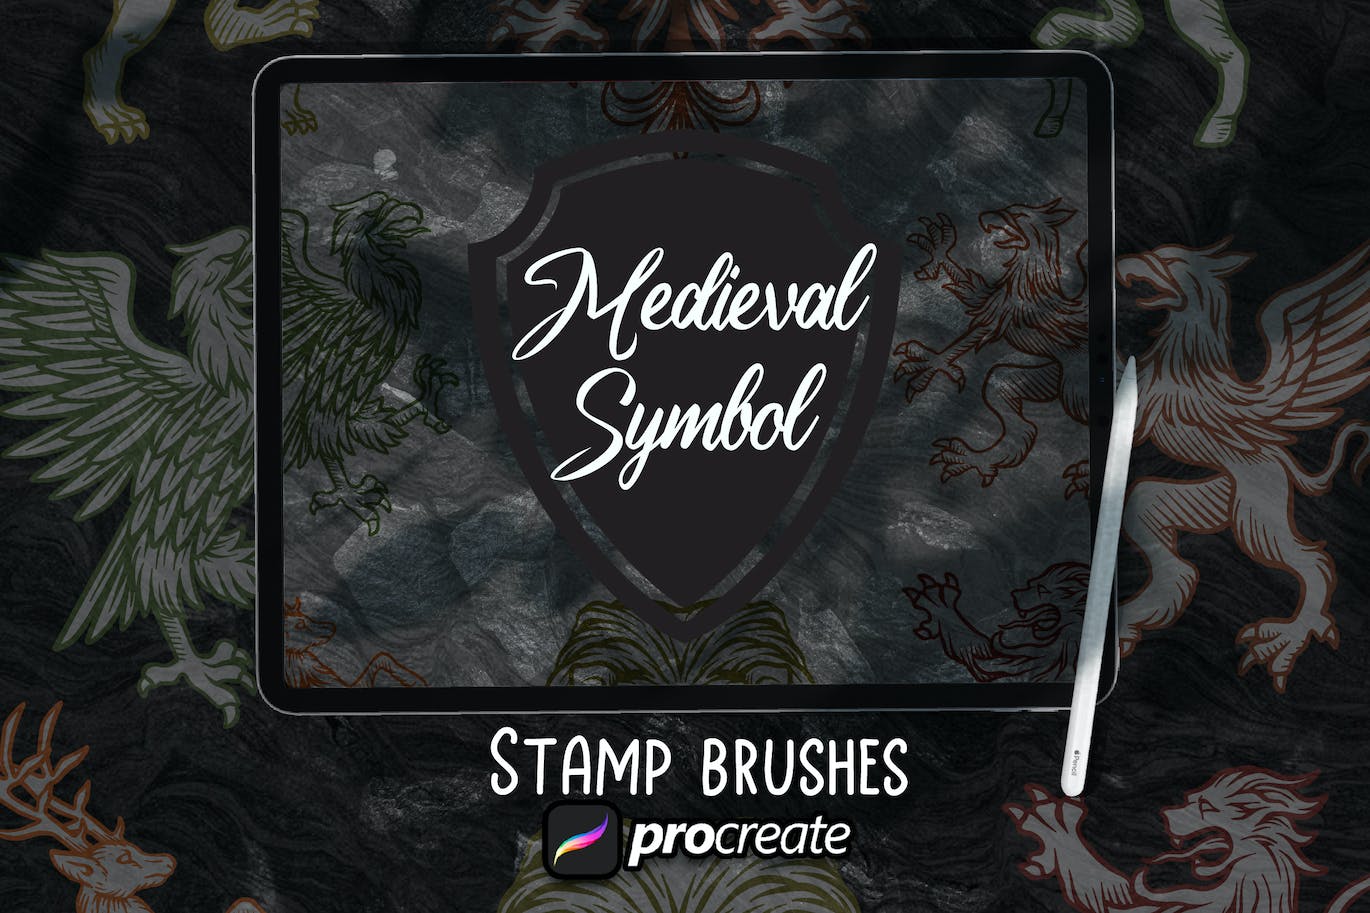 中世纪符号纹章Procreate印章绘画笔刷素材 Medieval Symbol Heraldic Brush Stamp Procreate 笔刷资源 第1张